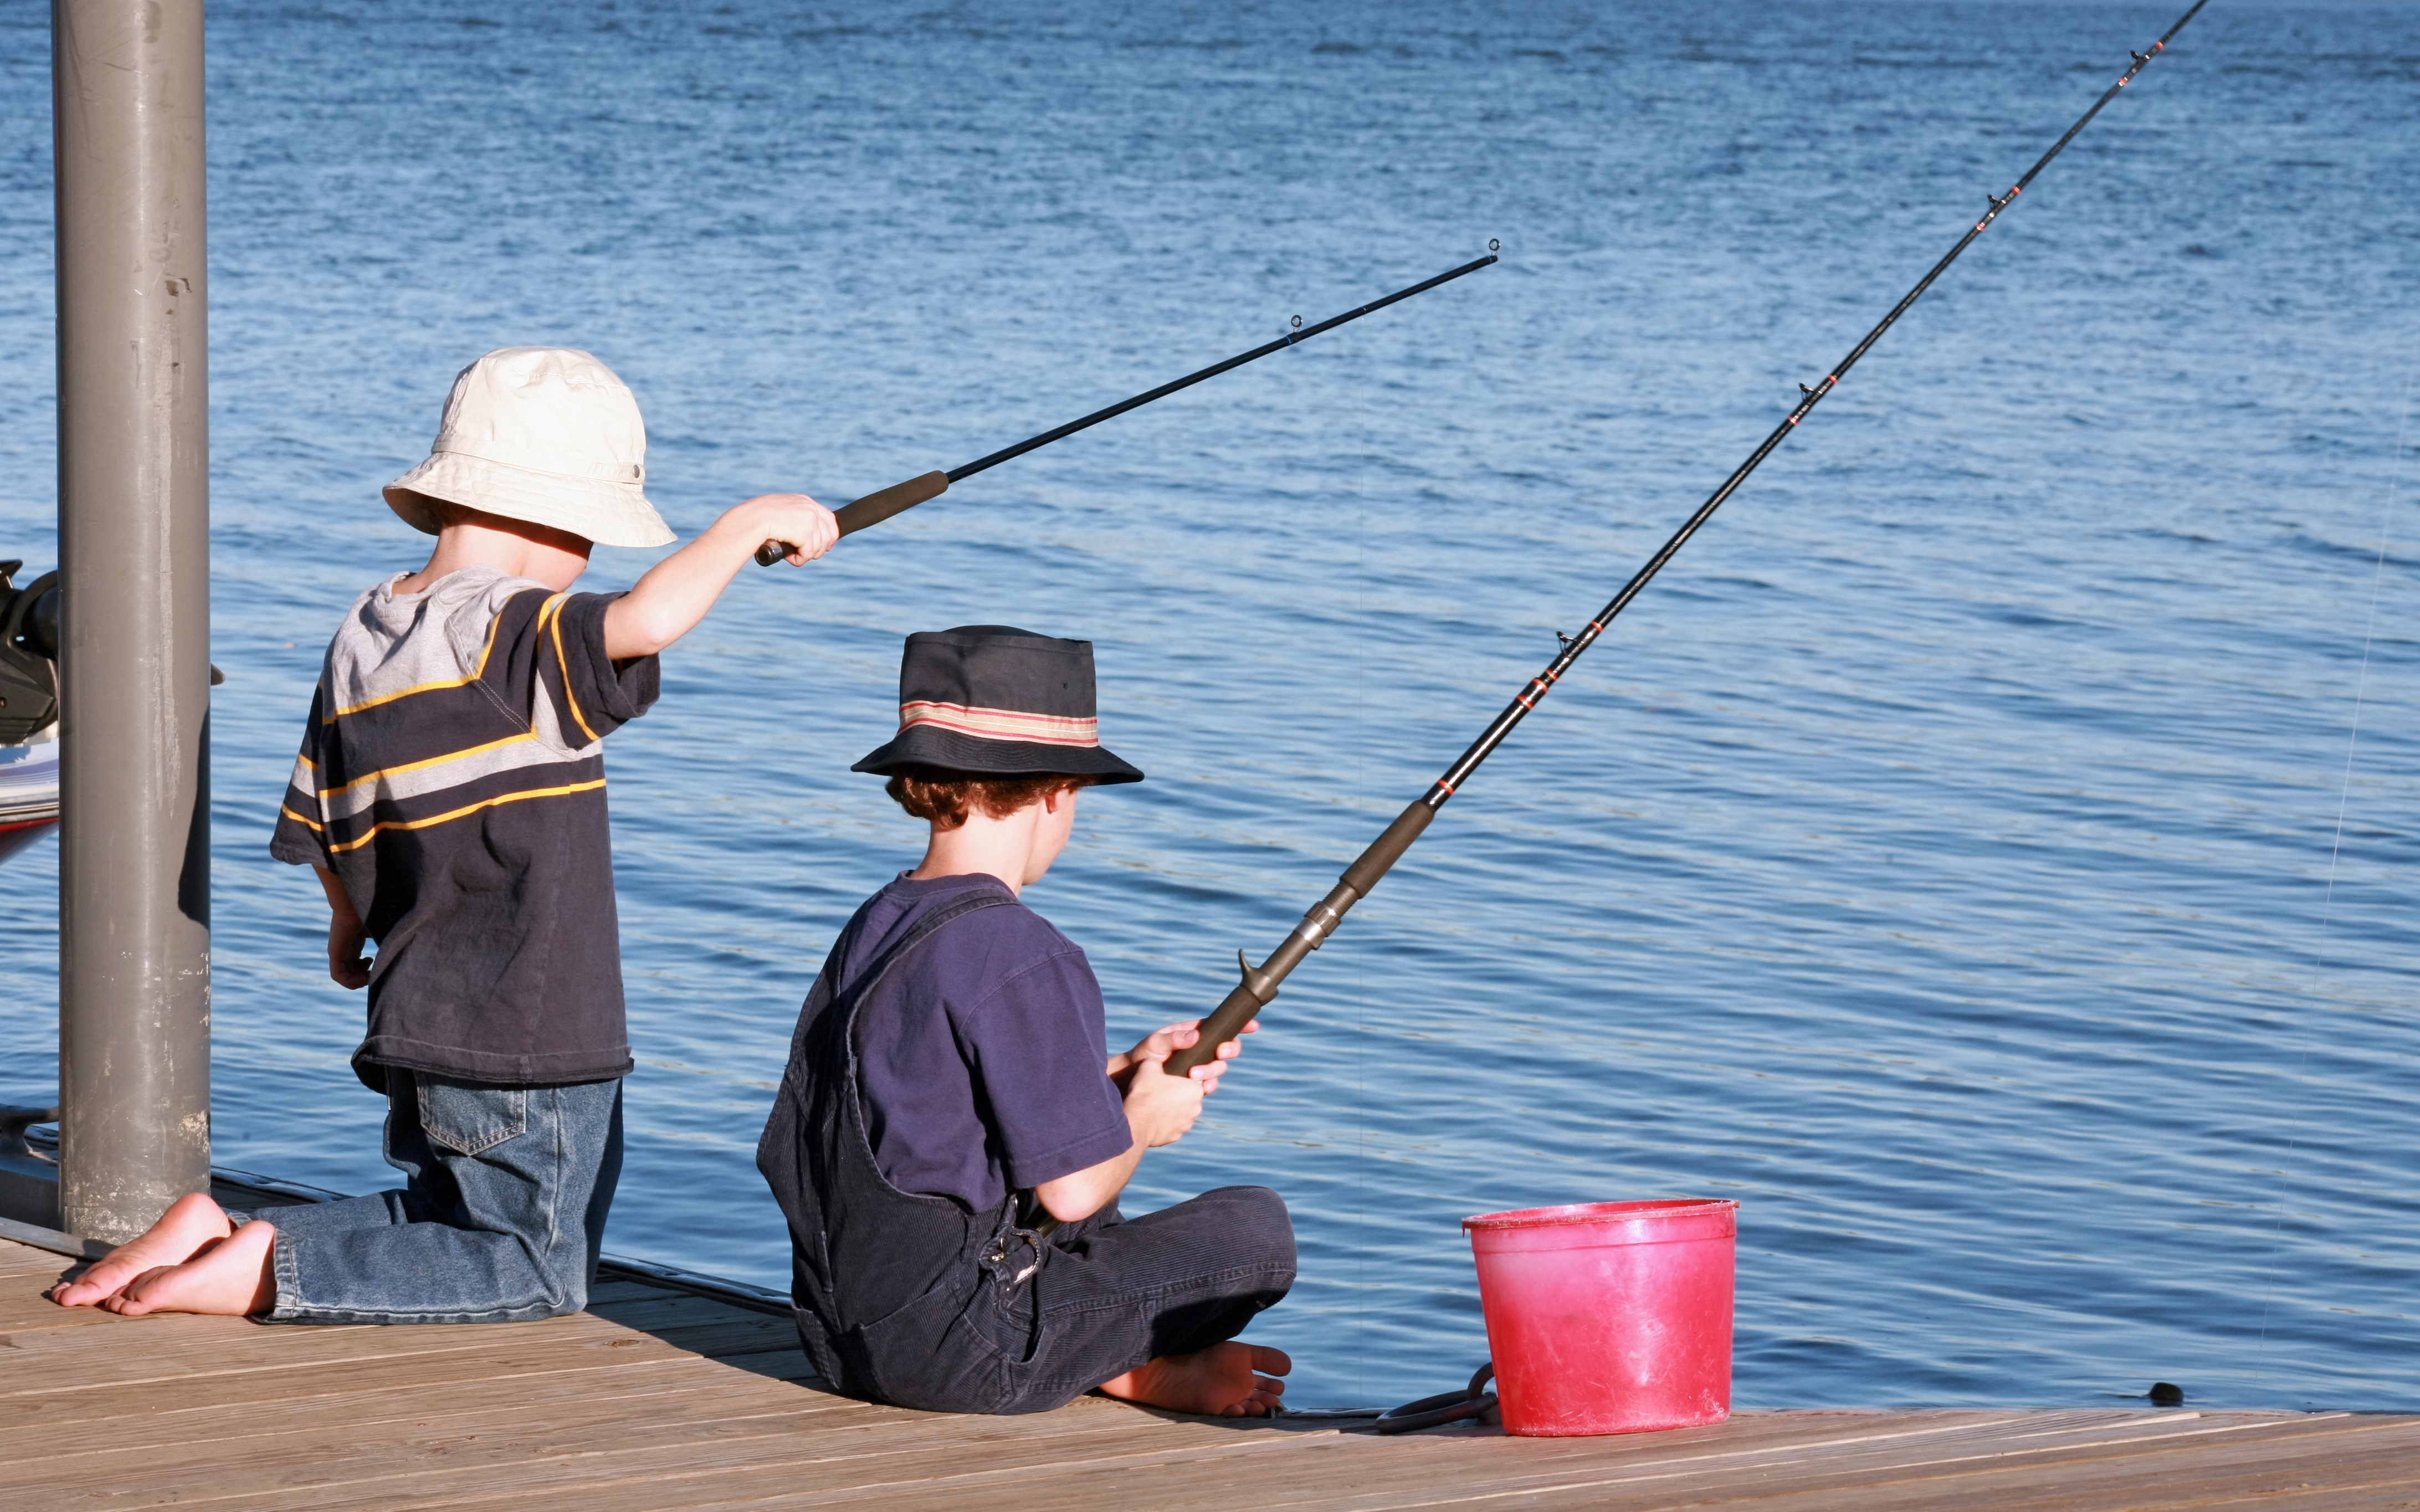 Deux jeunes garçons en train de pêcher au large d'une jetée | Source : Shutterstock